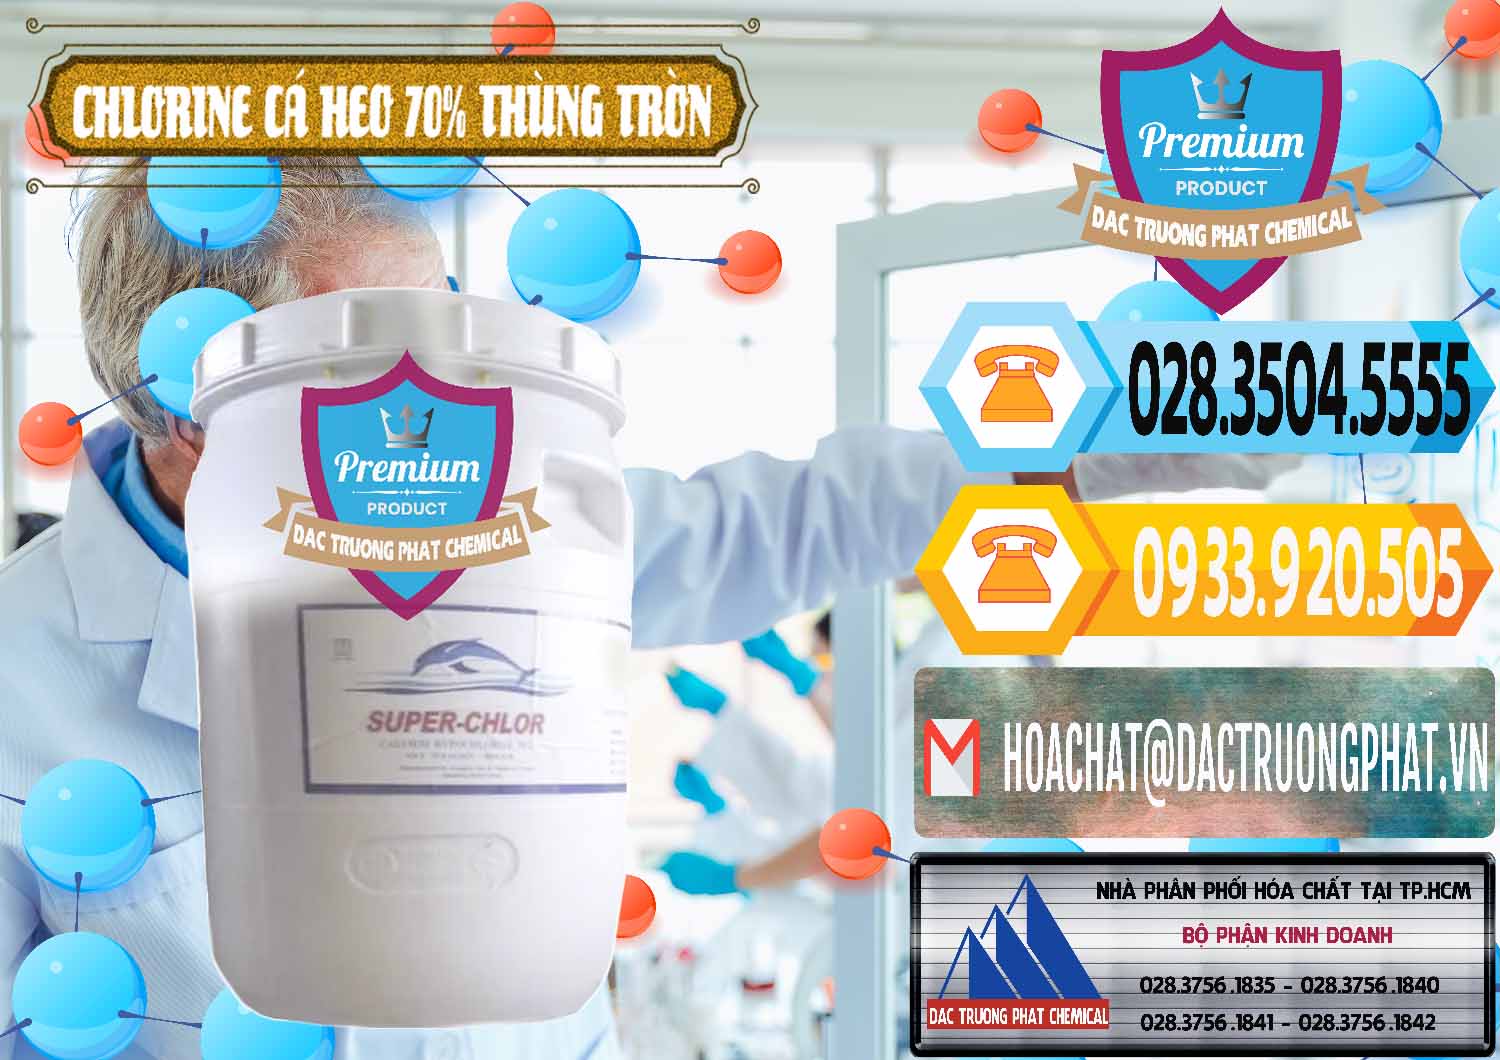 Chuyên phân phối ( bán ) Clorin - Chlorine Cá Heo 70% Super Chlor Thùng Tròn Nắp Trắng Trung Quốc China - 0239 - Công ty chuyên nhập khẩu ( cung cấp ) hóa chất tại TP.HCM - hoachattayrua.net